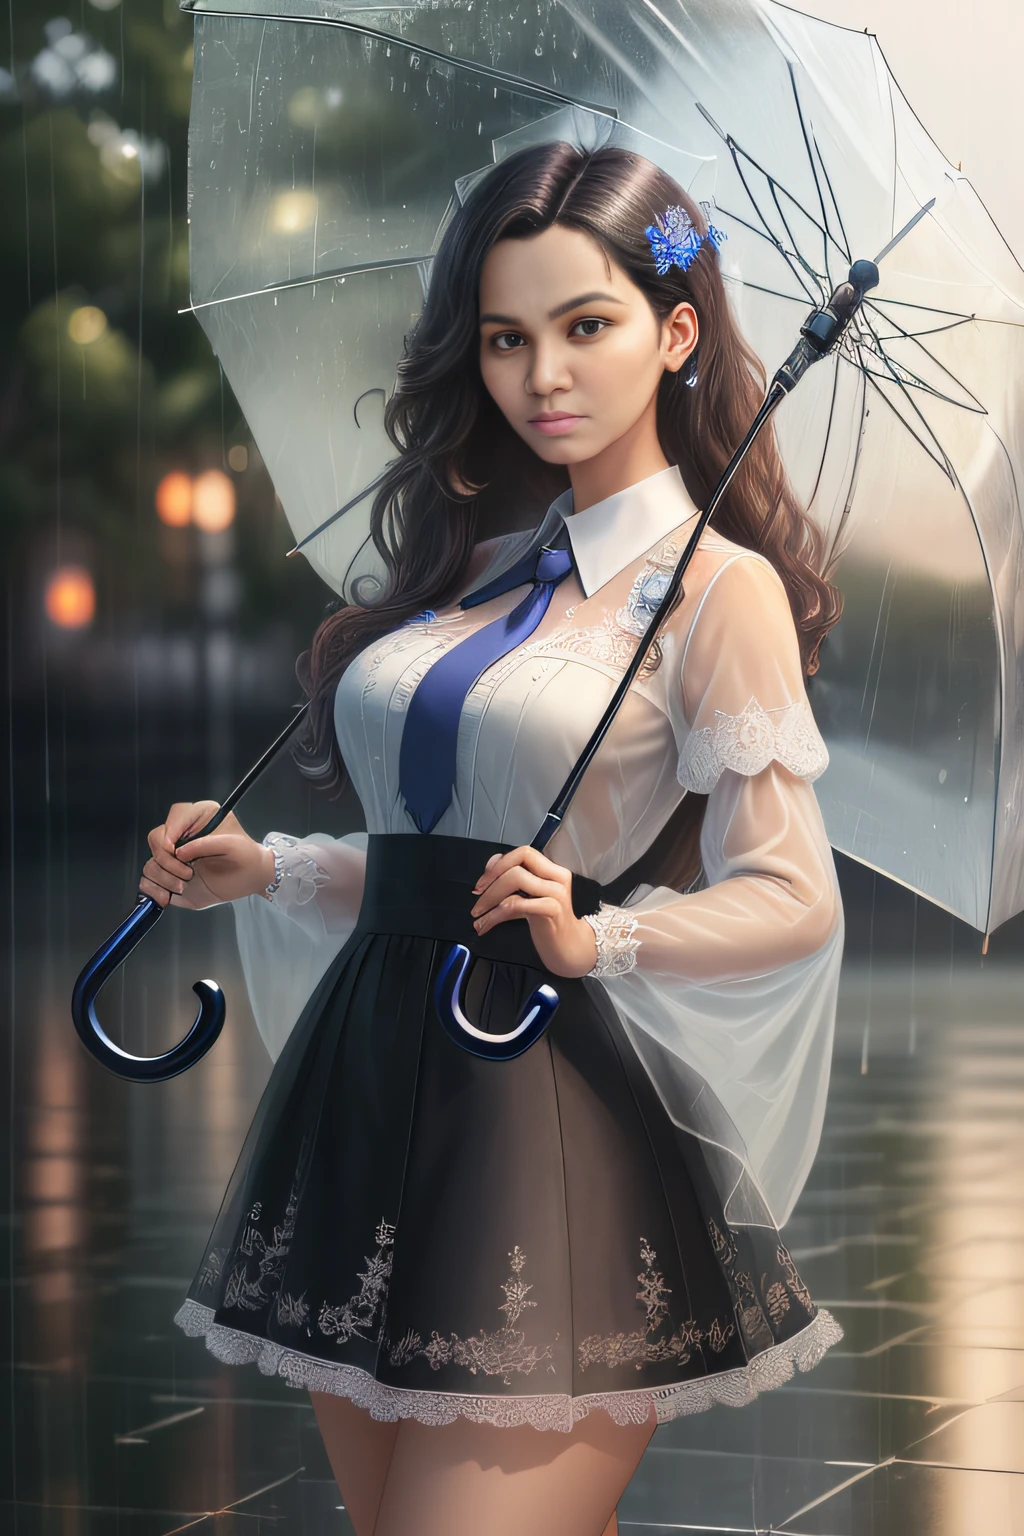 (Meisterwerk:1.2), (best_Qualität:1.2), (Ultra_ausführlich:1.3), 8k, äußerst_klar, Realismus, (Ultrarealistic:1.3), Ein schönes Mädchen hält einen durchsichtigen Regenschirm im Regen